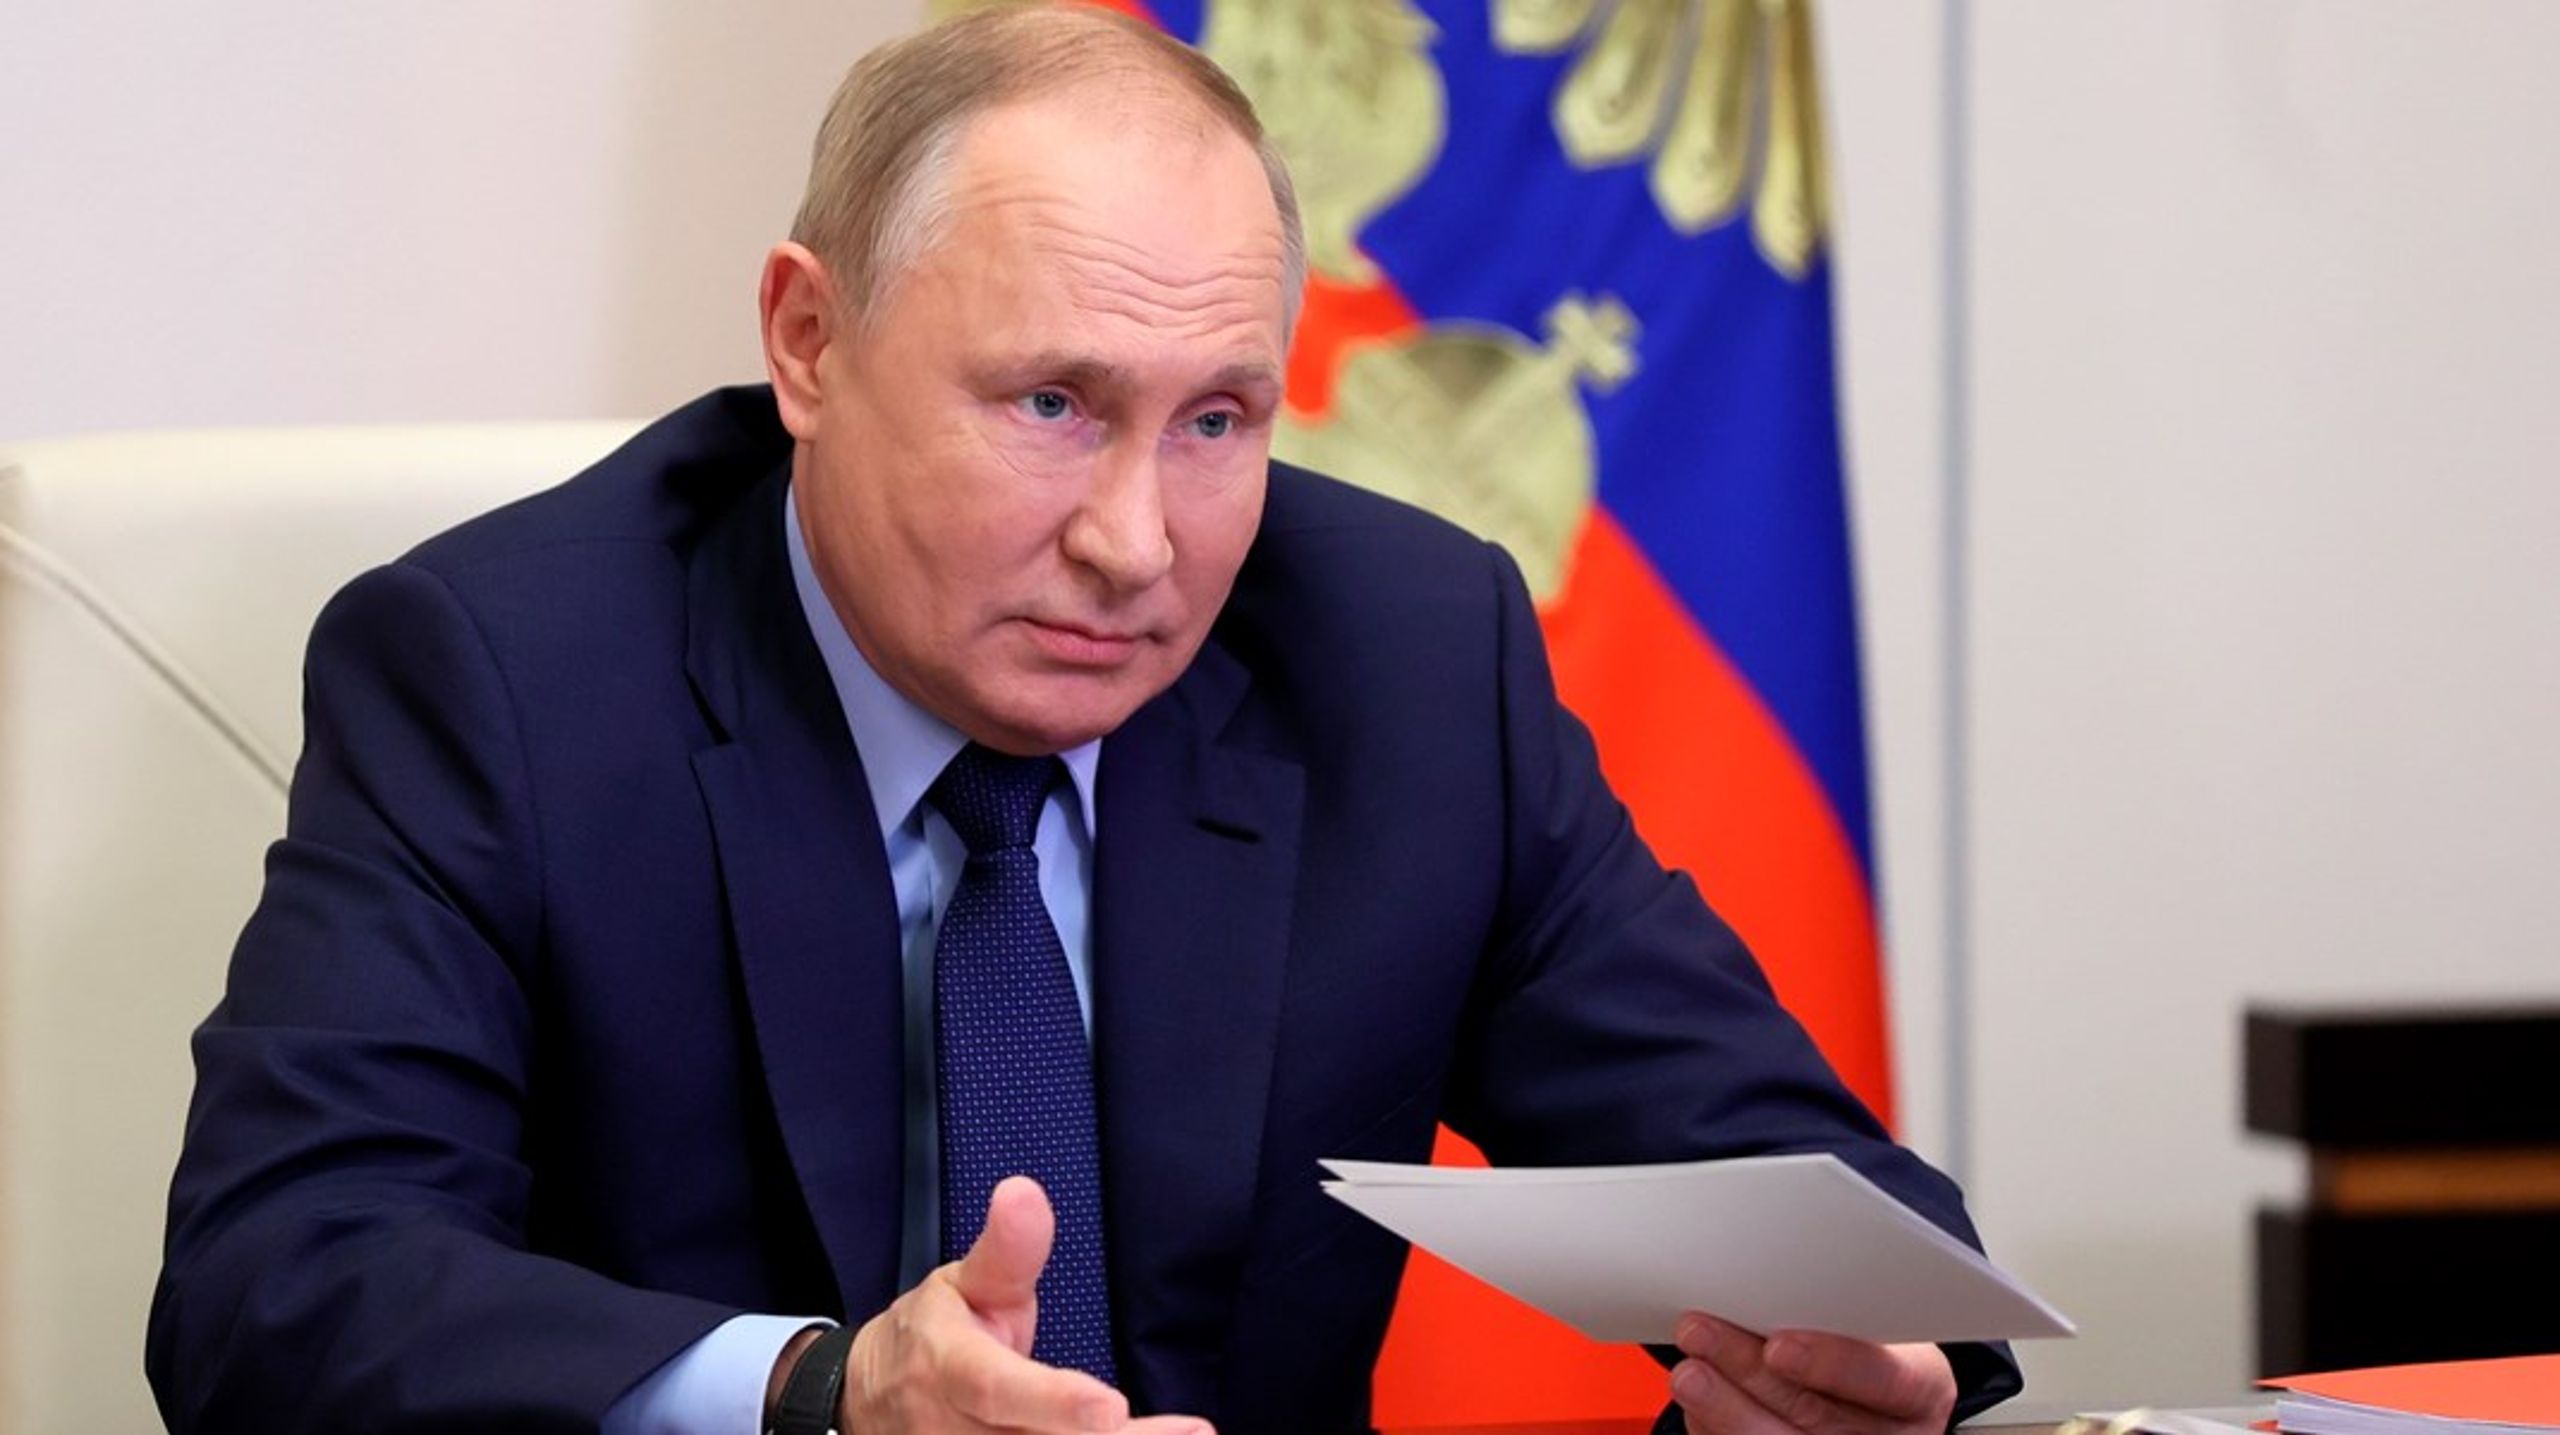 Vladimir Putin. ”En Rysslandsstrategi måste både motverka den ryska regimens maktspel och samtidigt bygga kulturella, ekonomiska och mellanmänskliga relationer med det ryska folket.”